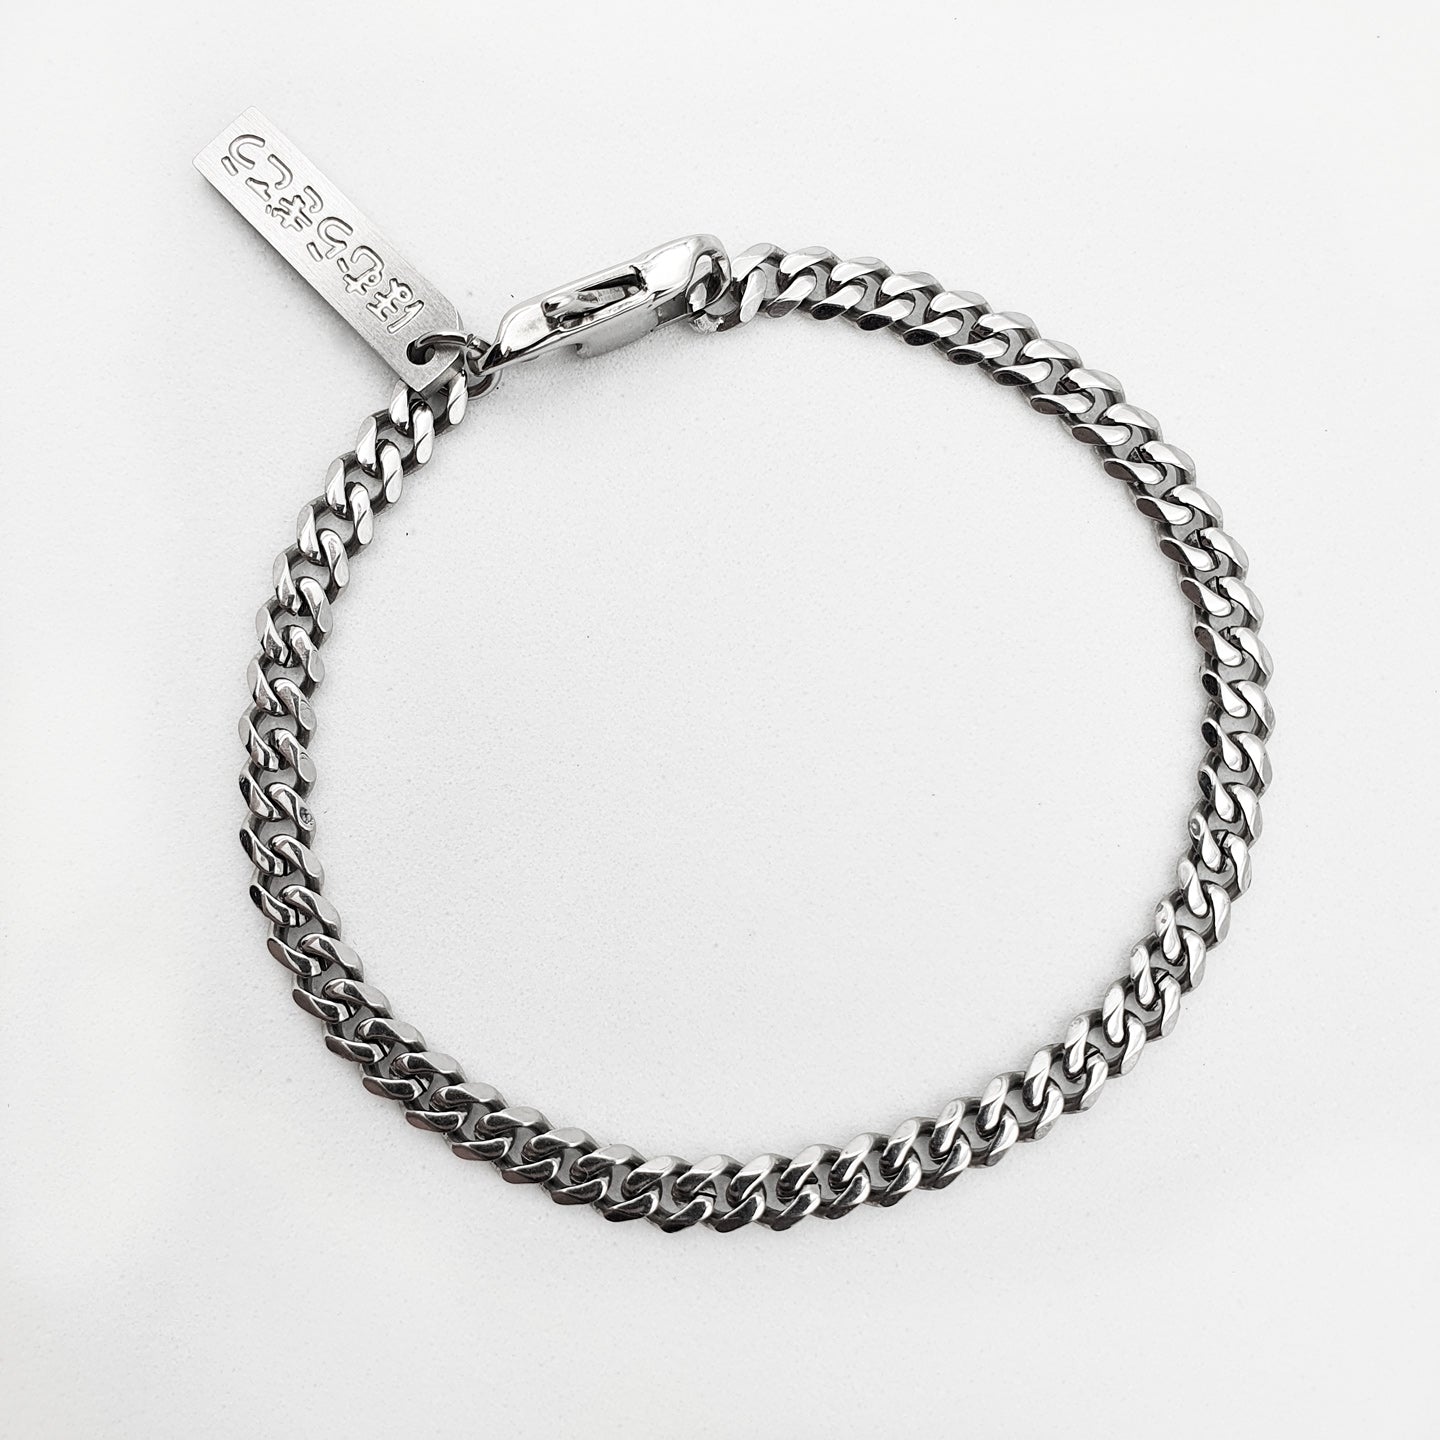 SS/21 Hostile Chain Bracelet